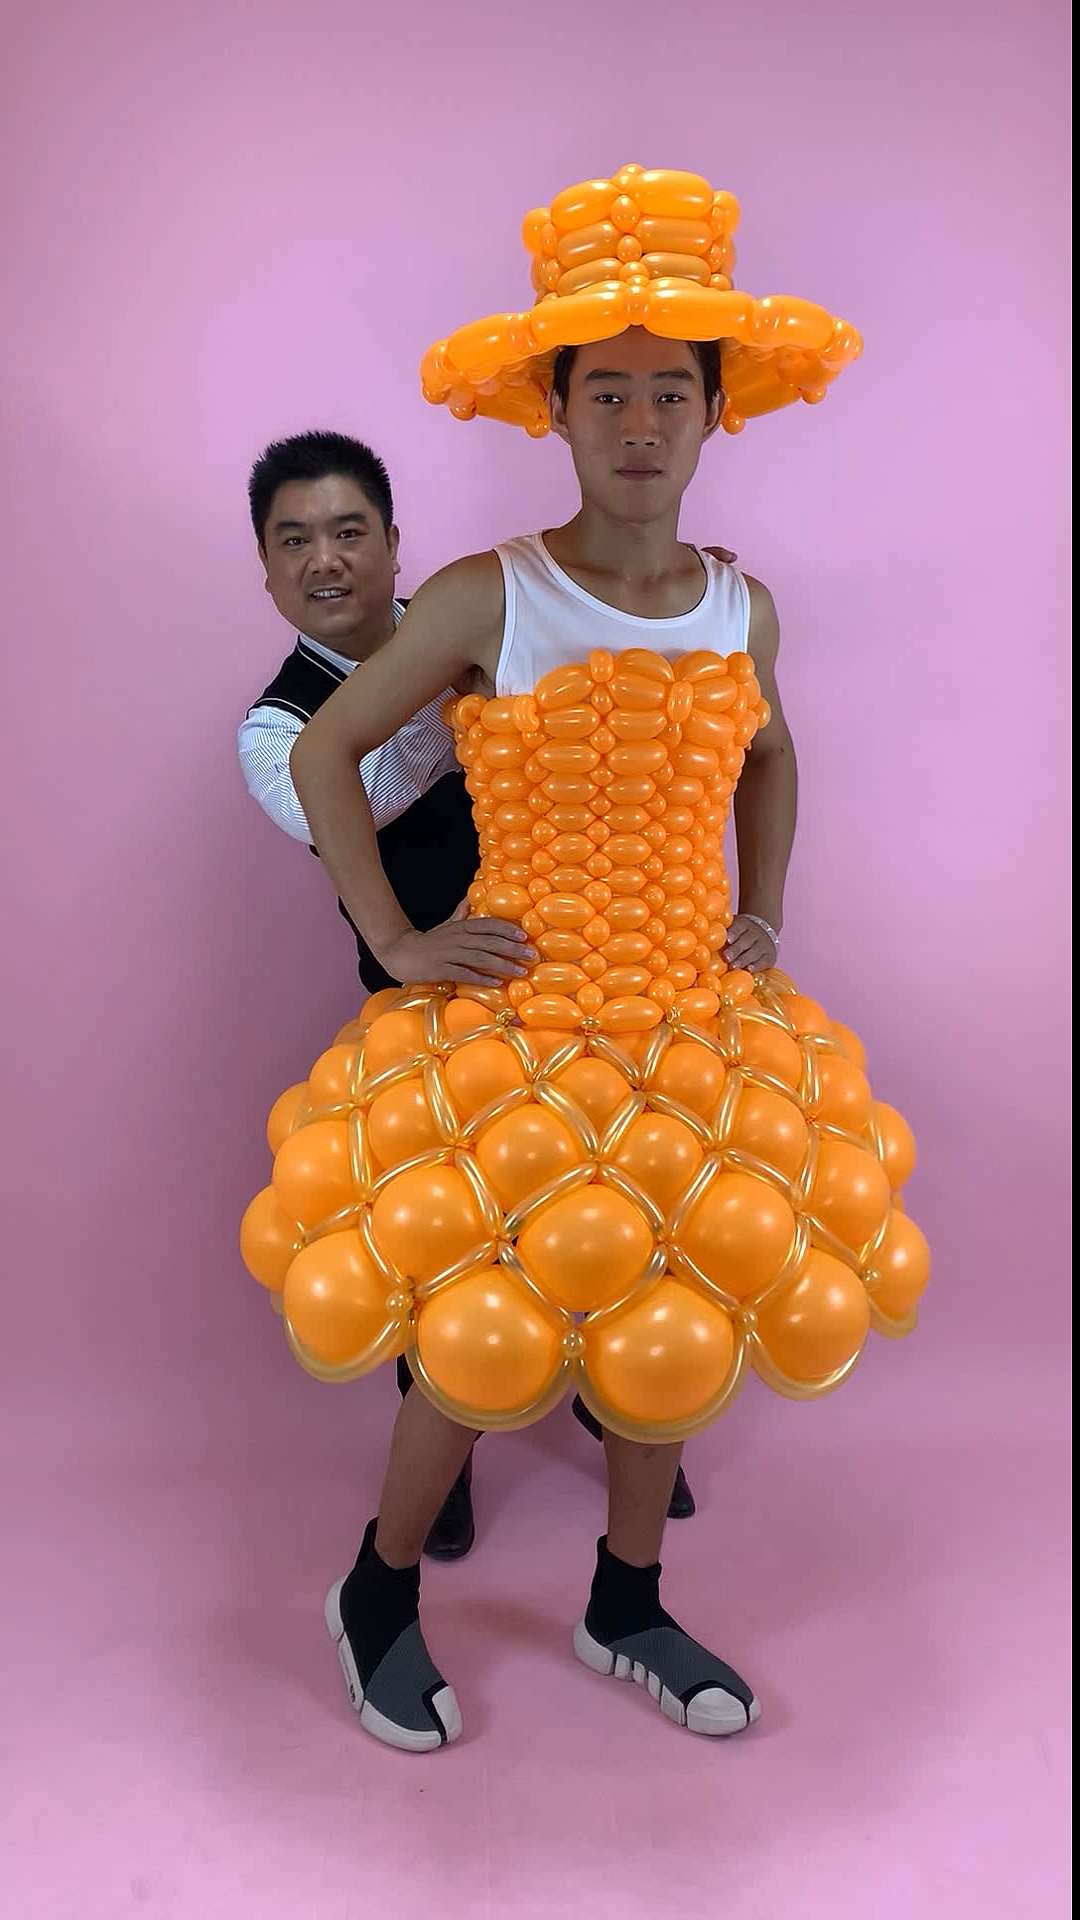 这样的气球服装你喜欢吗?